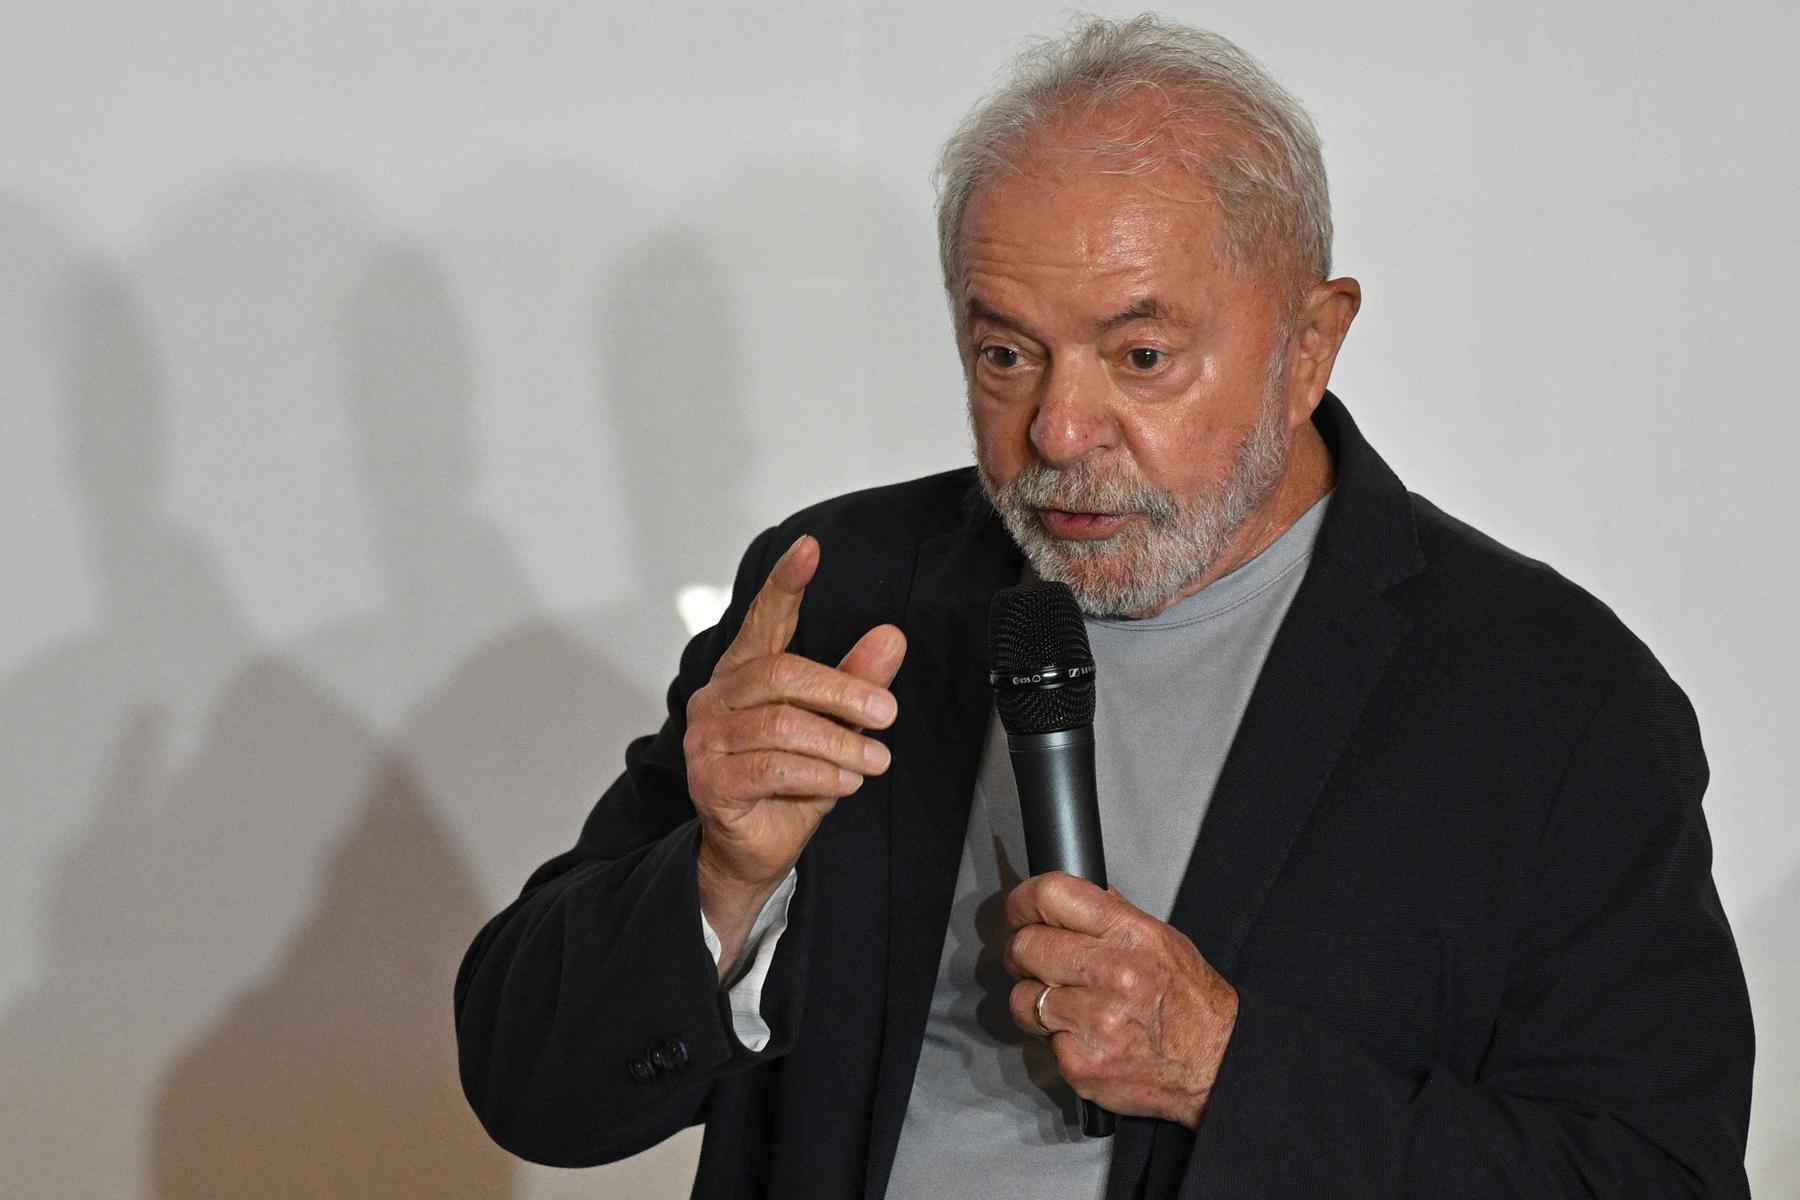 Vídeo: bronca de Lula em assessor durante o debate viraliza - NELSON ALMEIDA / AFP

